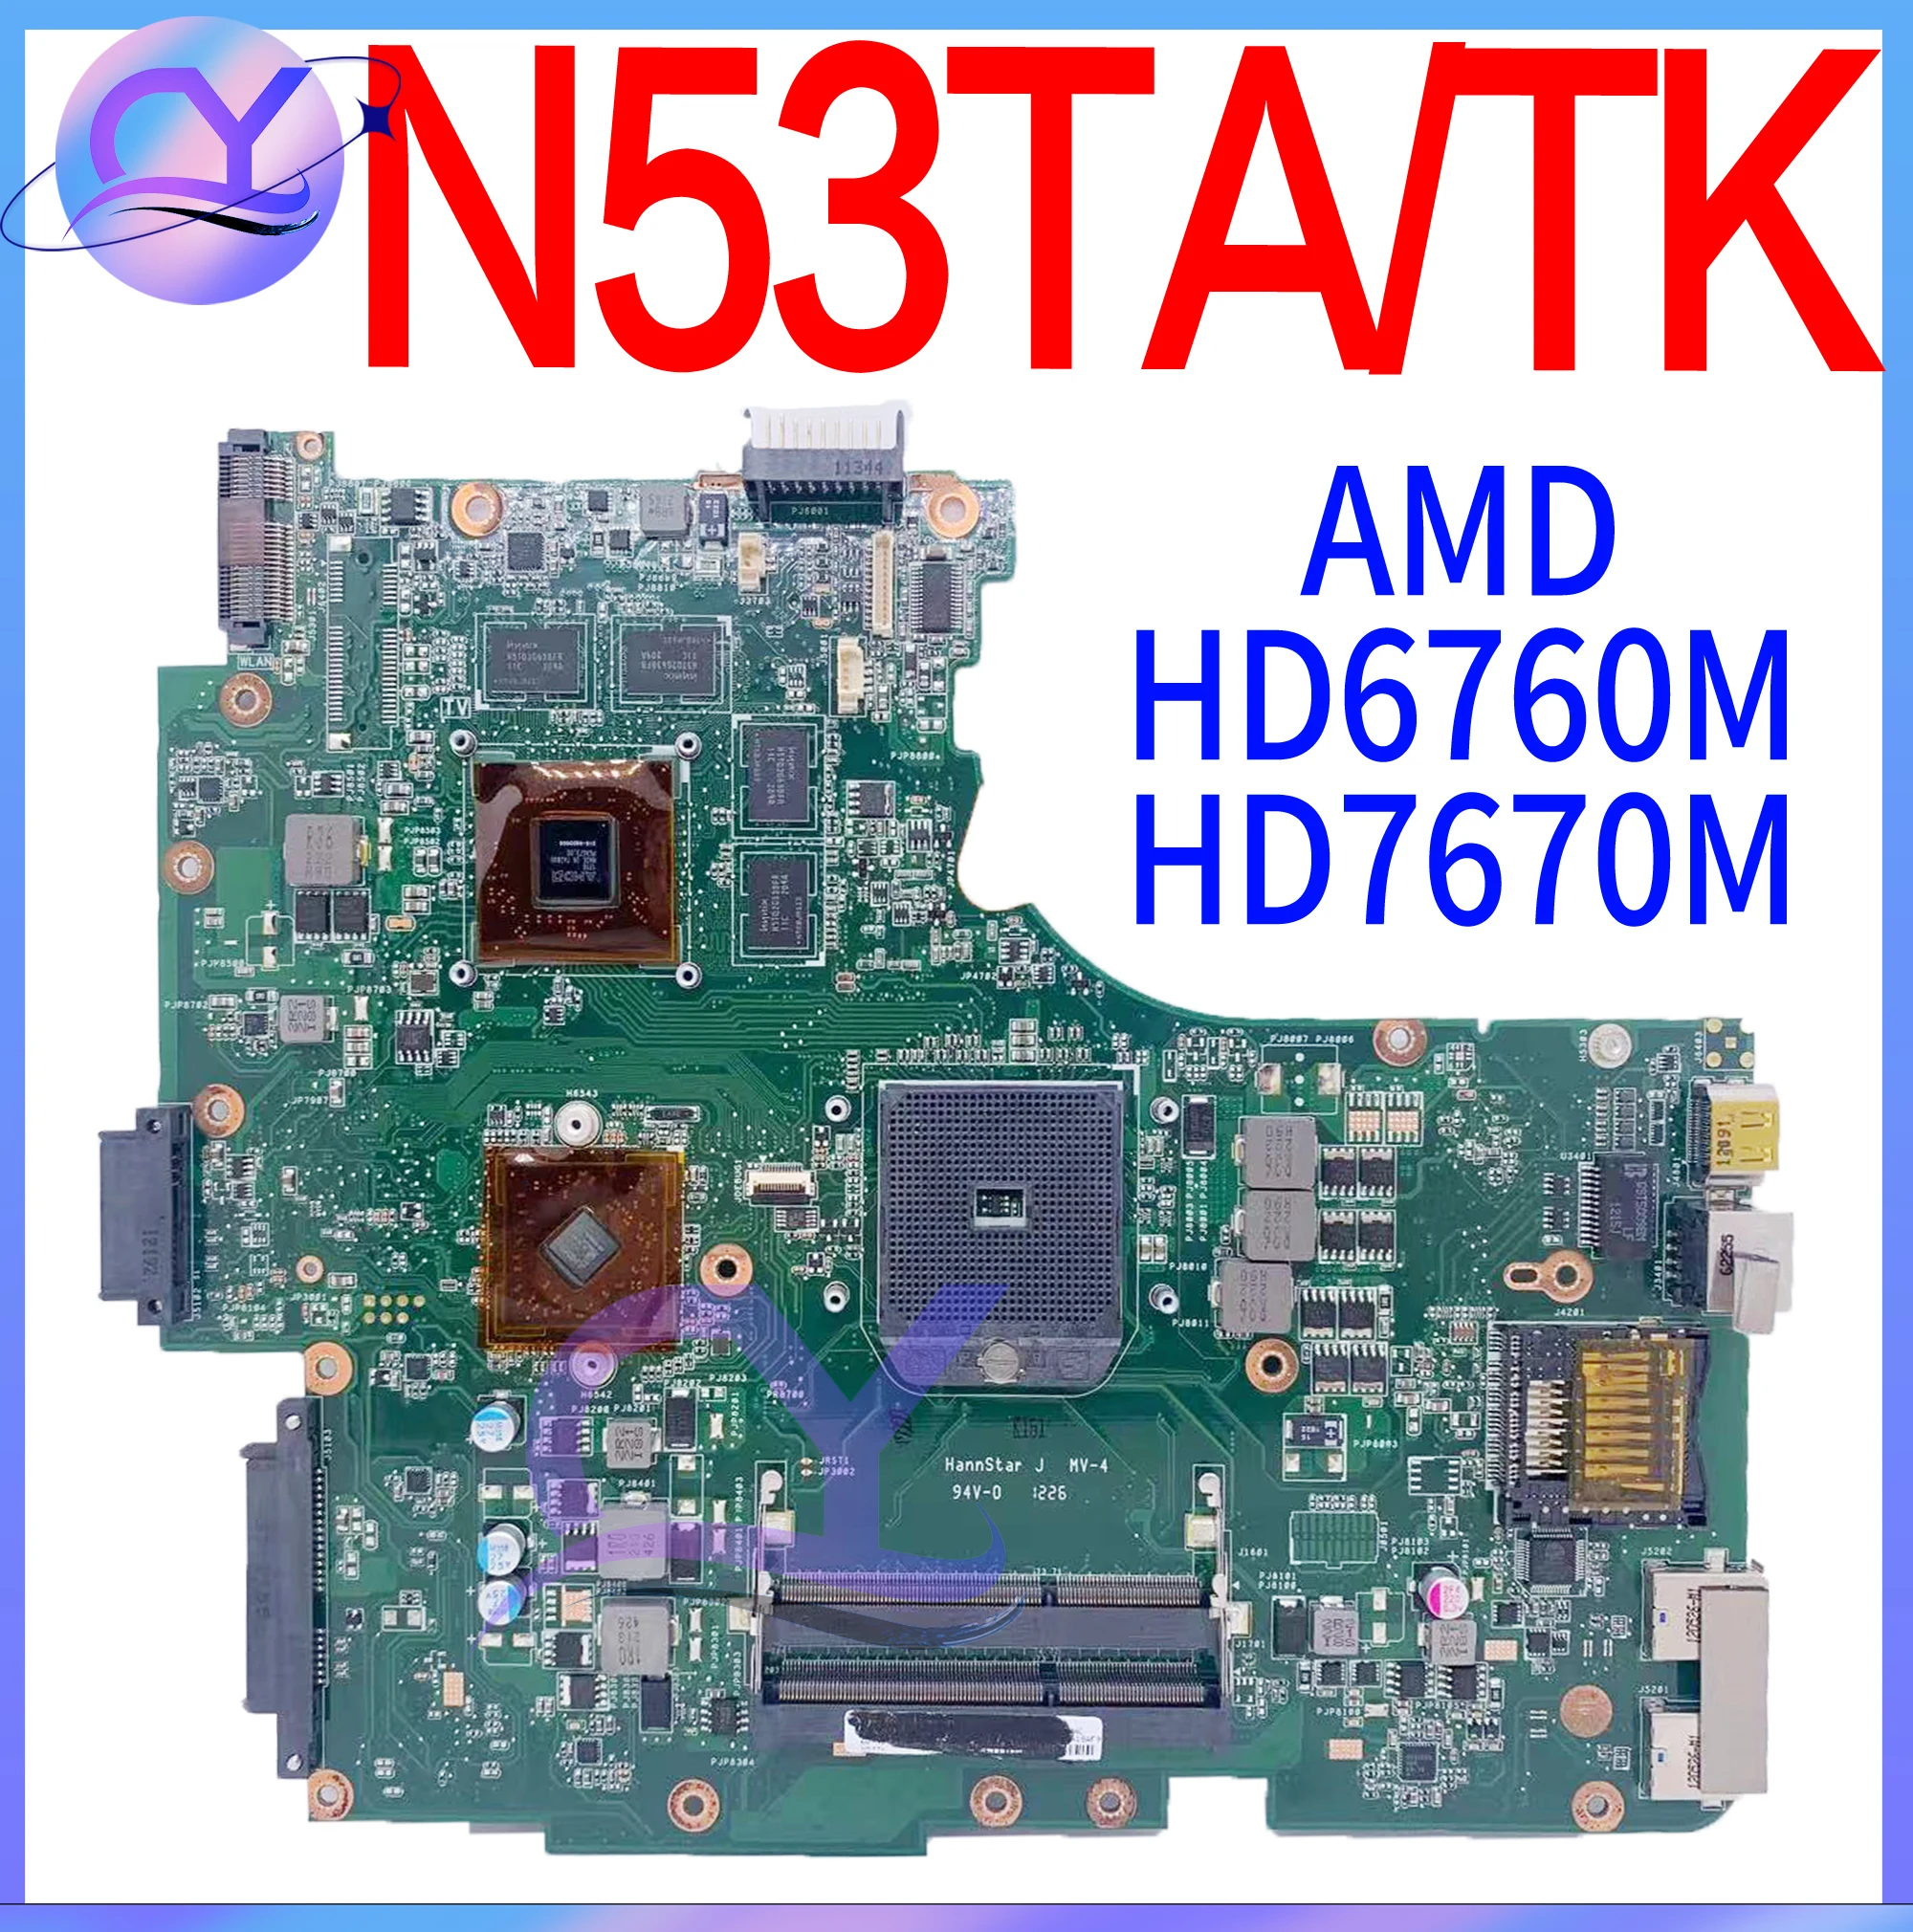 N53TA Notebook Mainboard For ASUS N53 N53T N53TK Laptop Motherboard With HD6380M 1G video memory Test work 100% Test ok